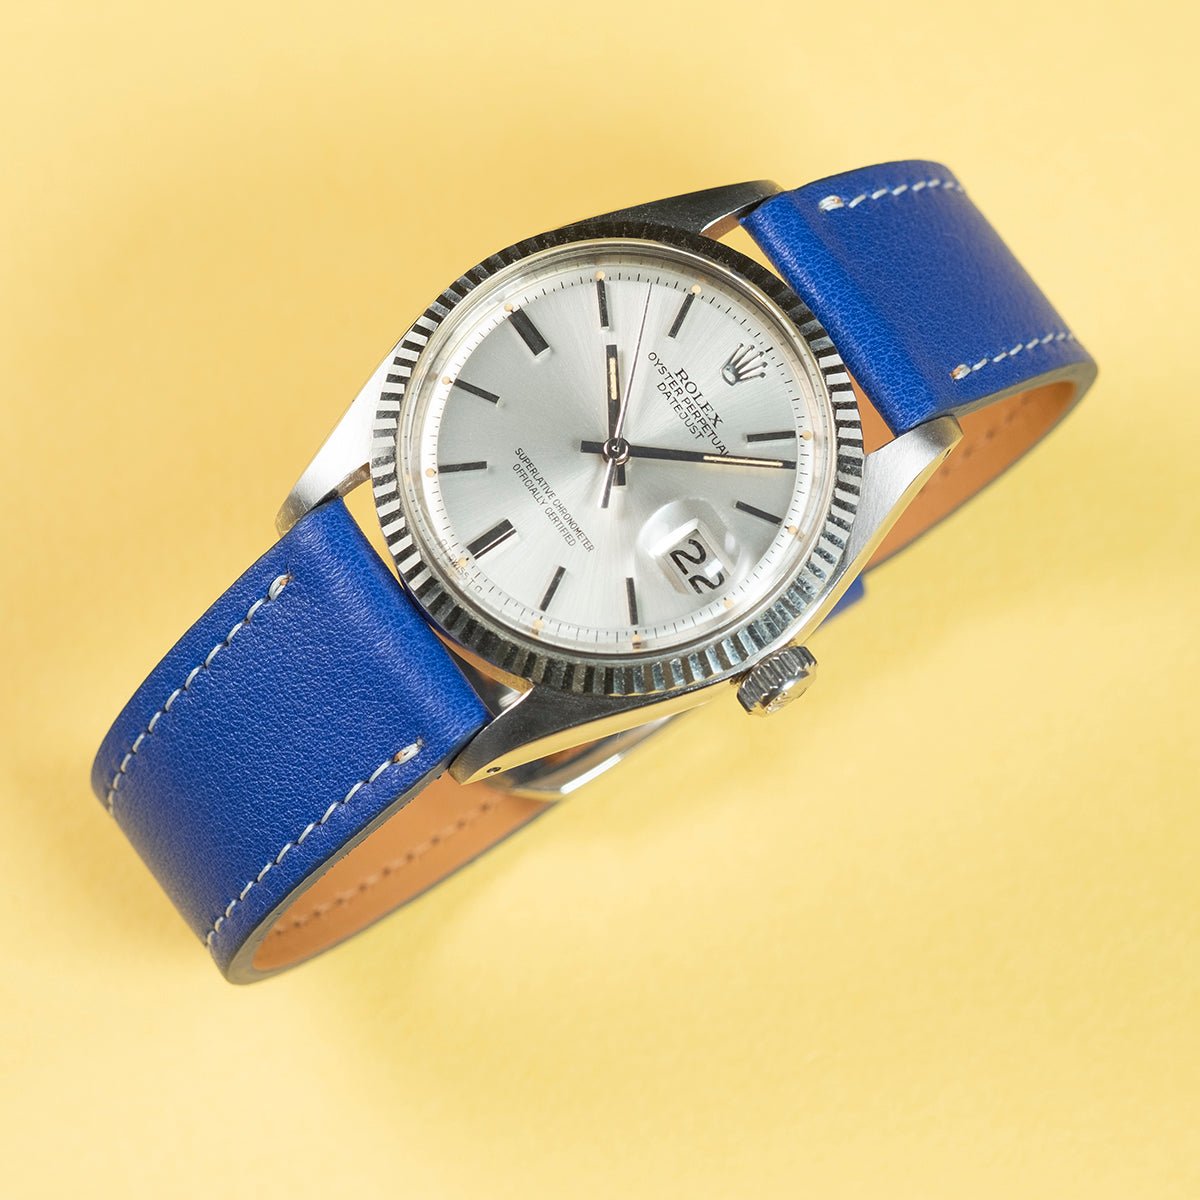 Bracelet de montre veau bleu - Atelier romane